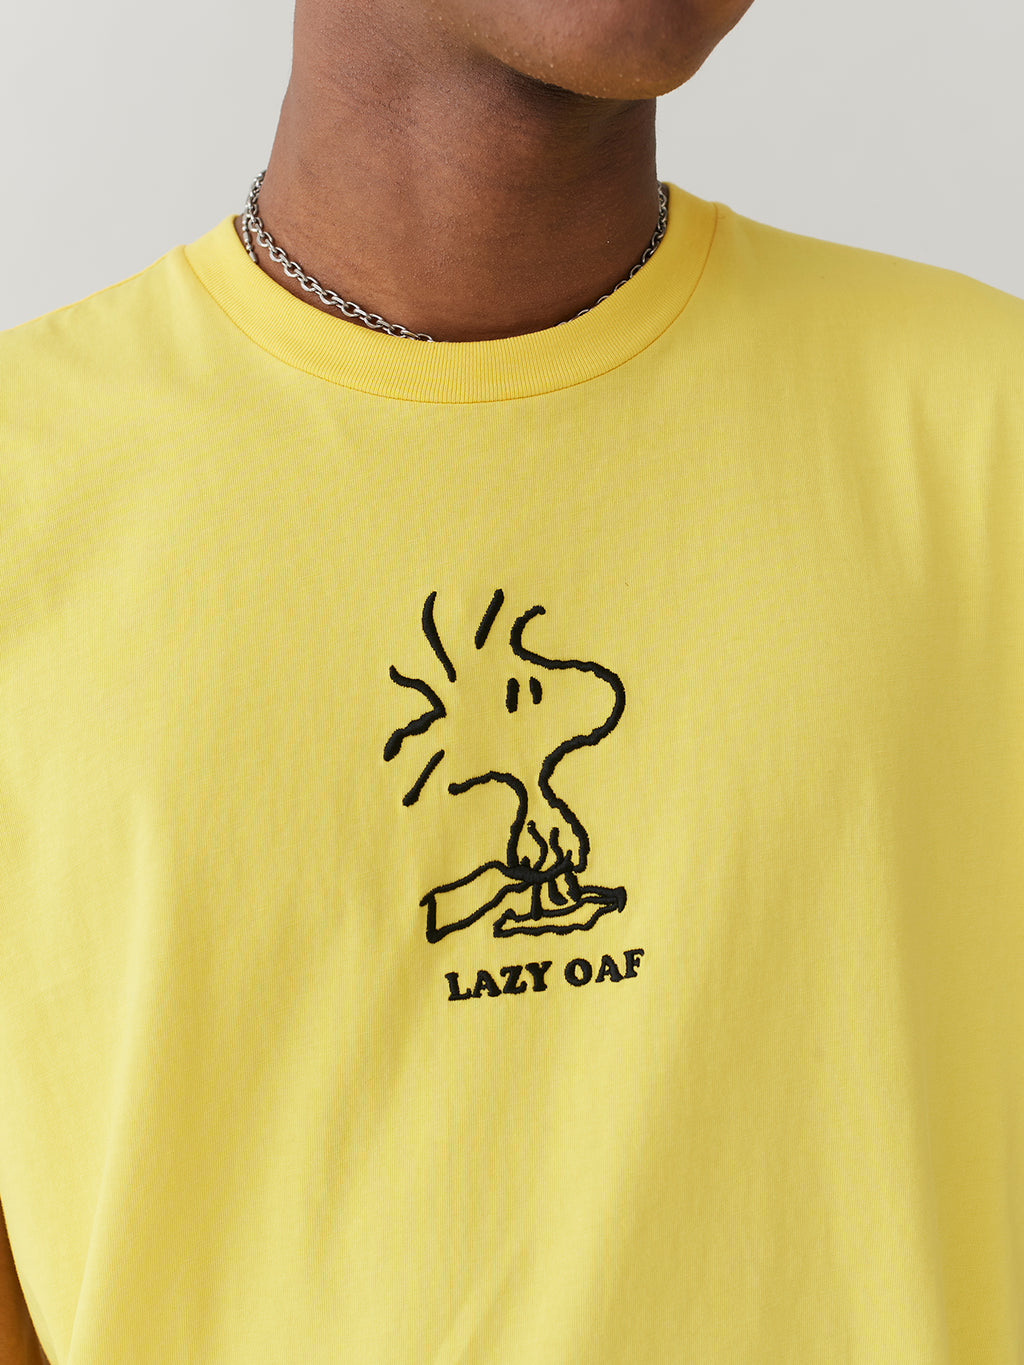 Lazy Oaf x Peanuts Woodstock Yellow T-Shirt